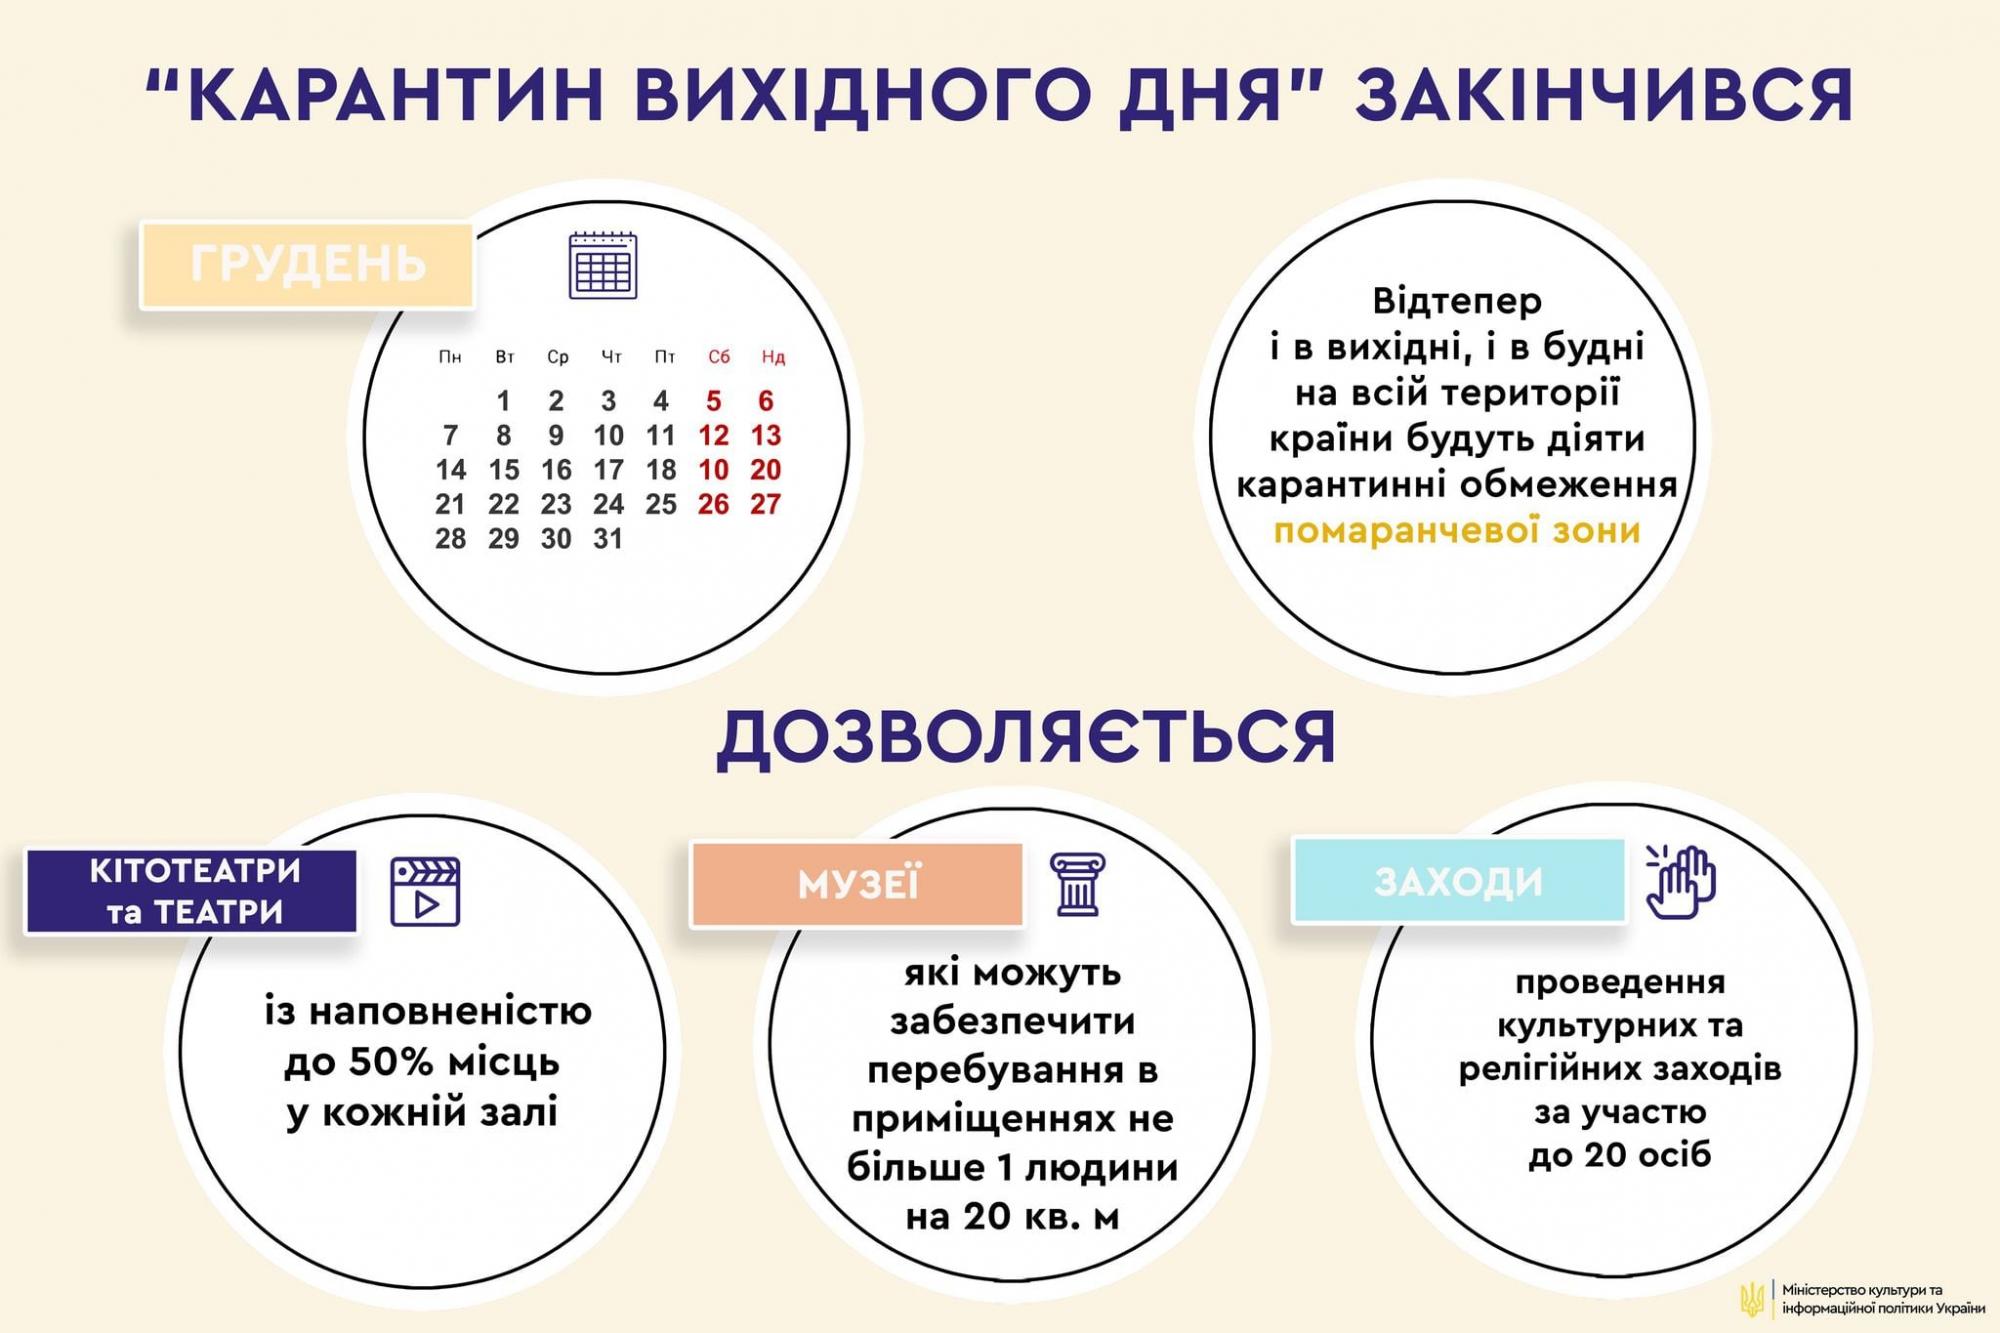 В Кабмине ограничения, которые будут действовать в Украине до локдауна. Инфографика: Минкульт